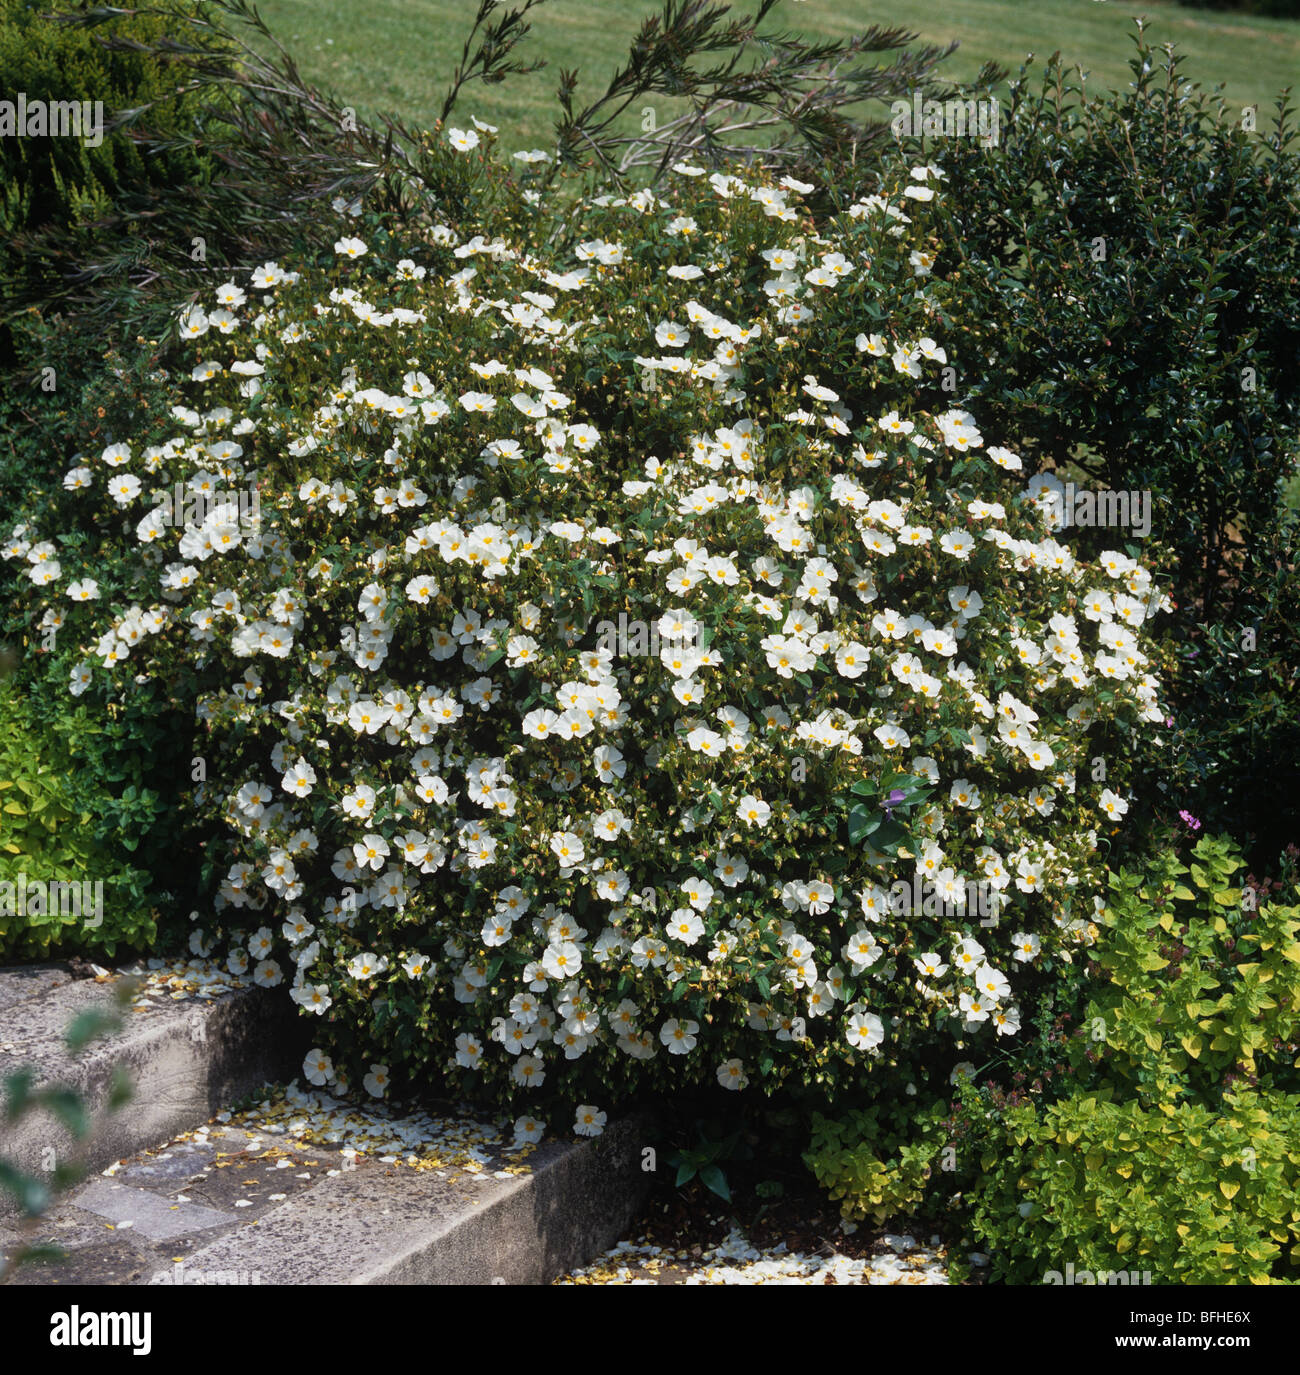 Flowering Cistus x Corbariensis shrub Stock Photo